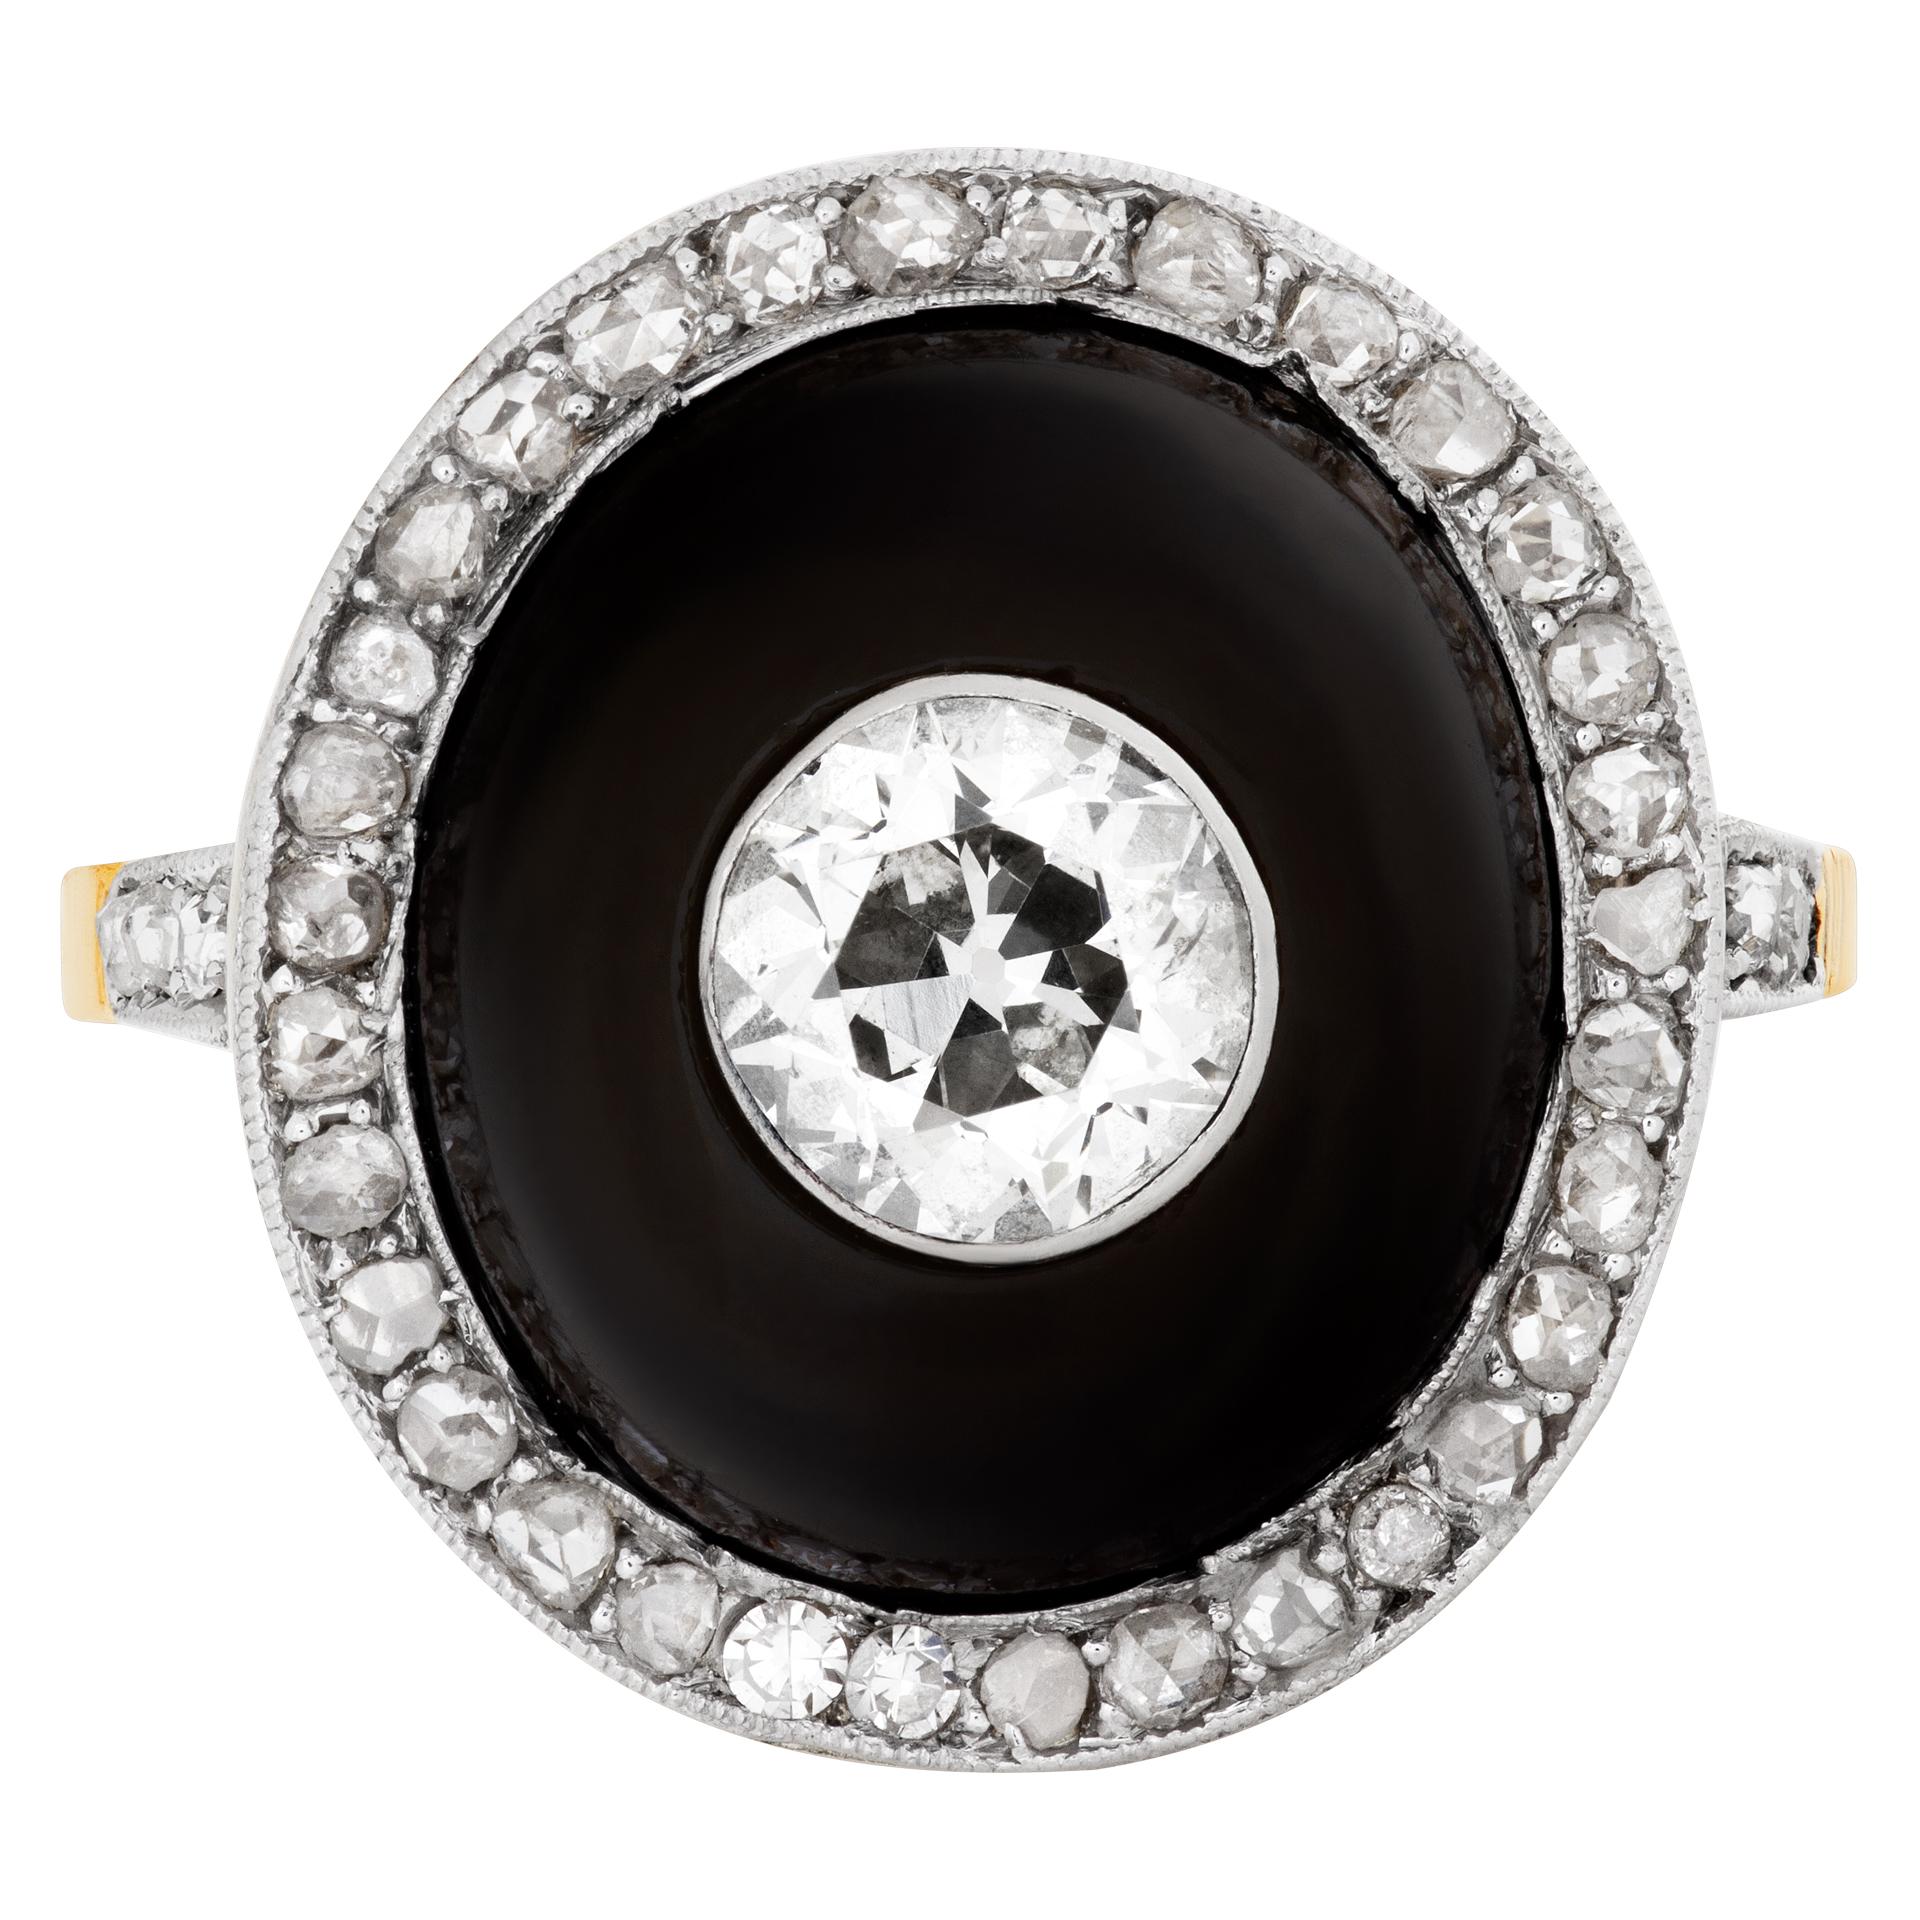 Bague victorienne vintage en 14k avec un diamant central de taille européenne d'environ 1 carat, couleur J, pureté SI1 ; dans un onyx diomé entouré d'un chaton de diamants taille rose. Taille 6.5
